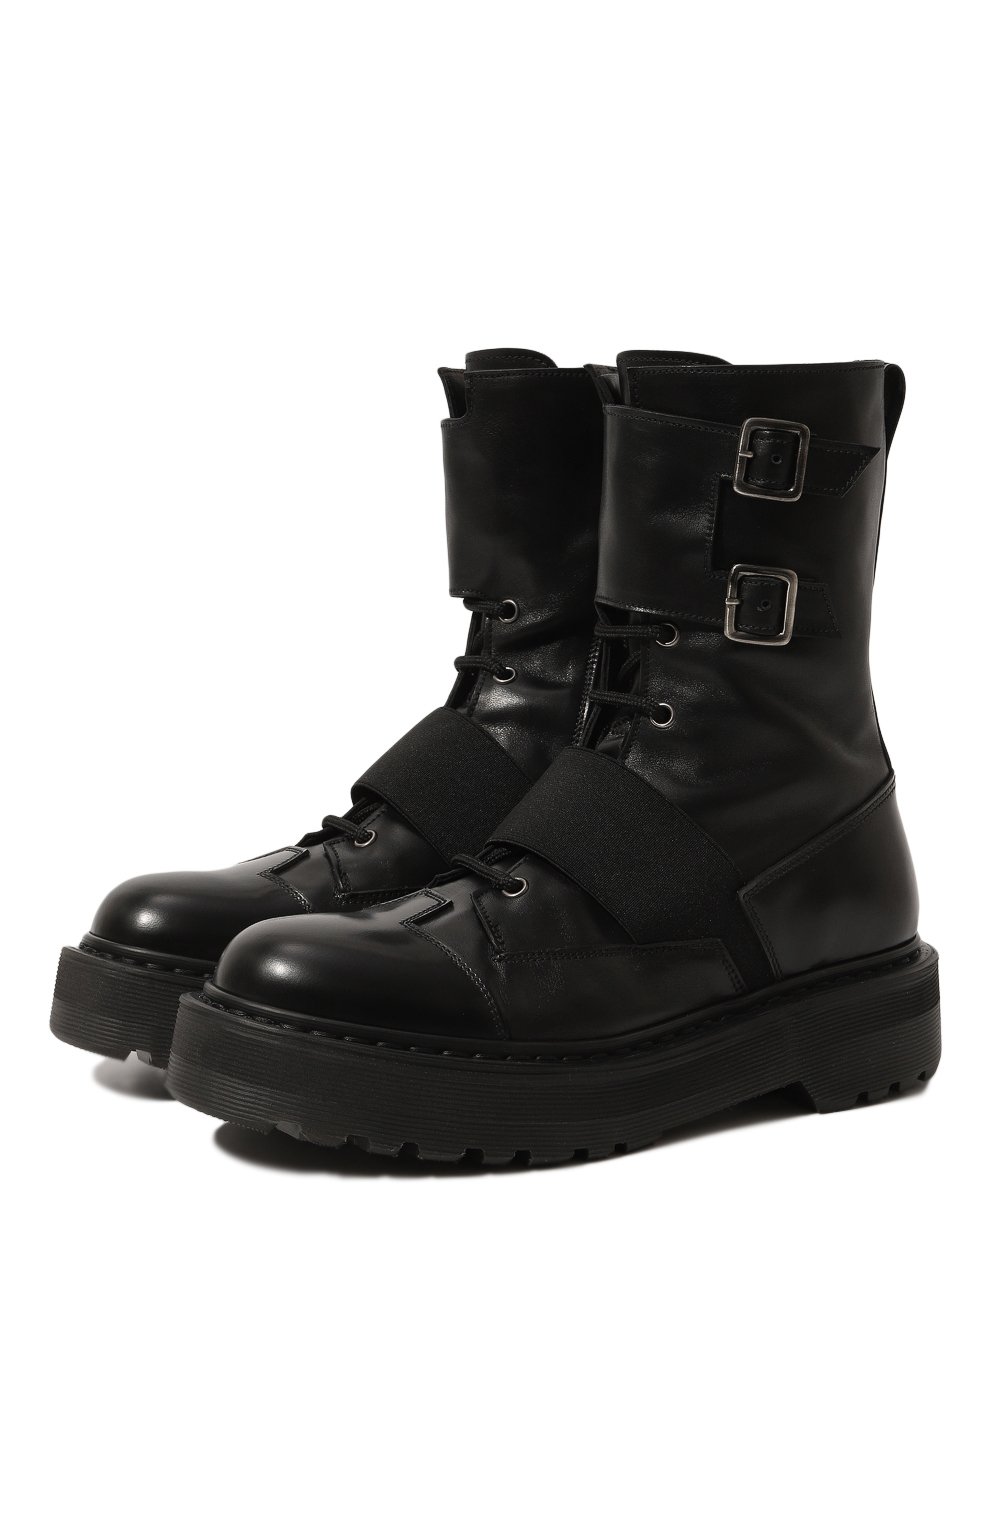 Кожаные ботинки Premiata M4970C/VARIANTE 3, цвет чёрный, размер 37 M4970C/VARIANTE 3 - фото 1